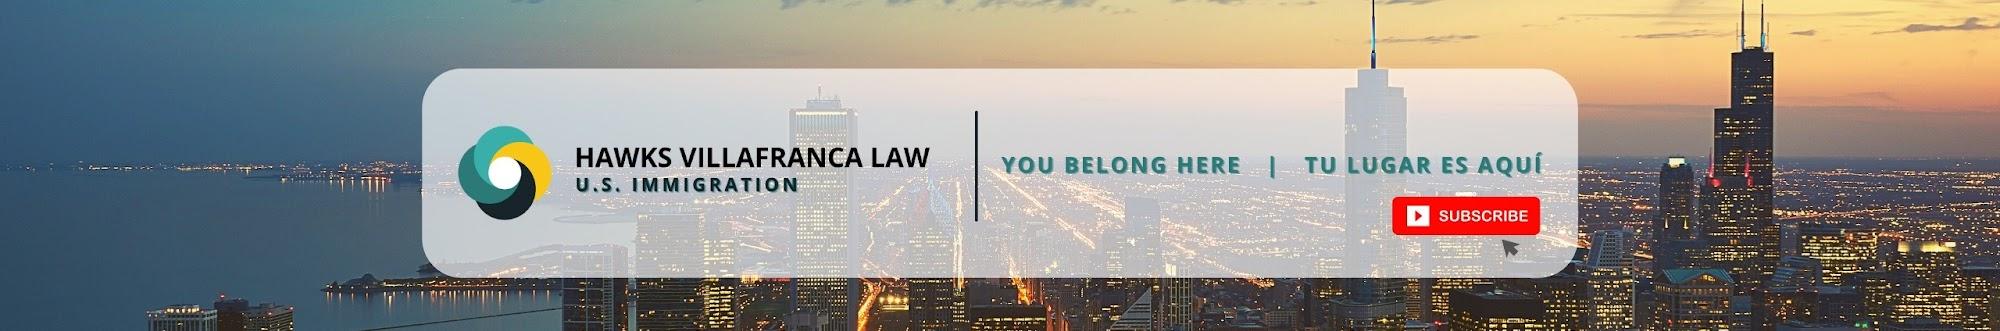 USA Visa TV - Hawks Villafranca Law